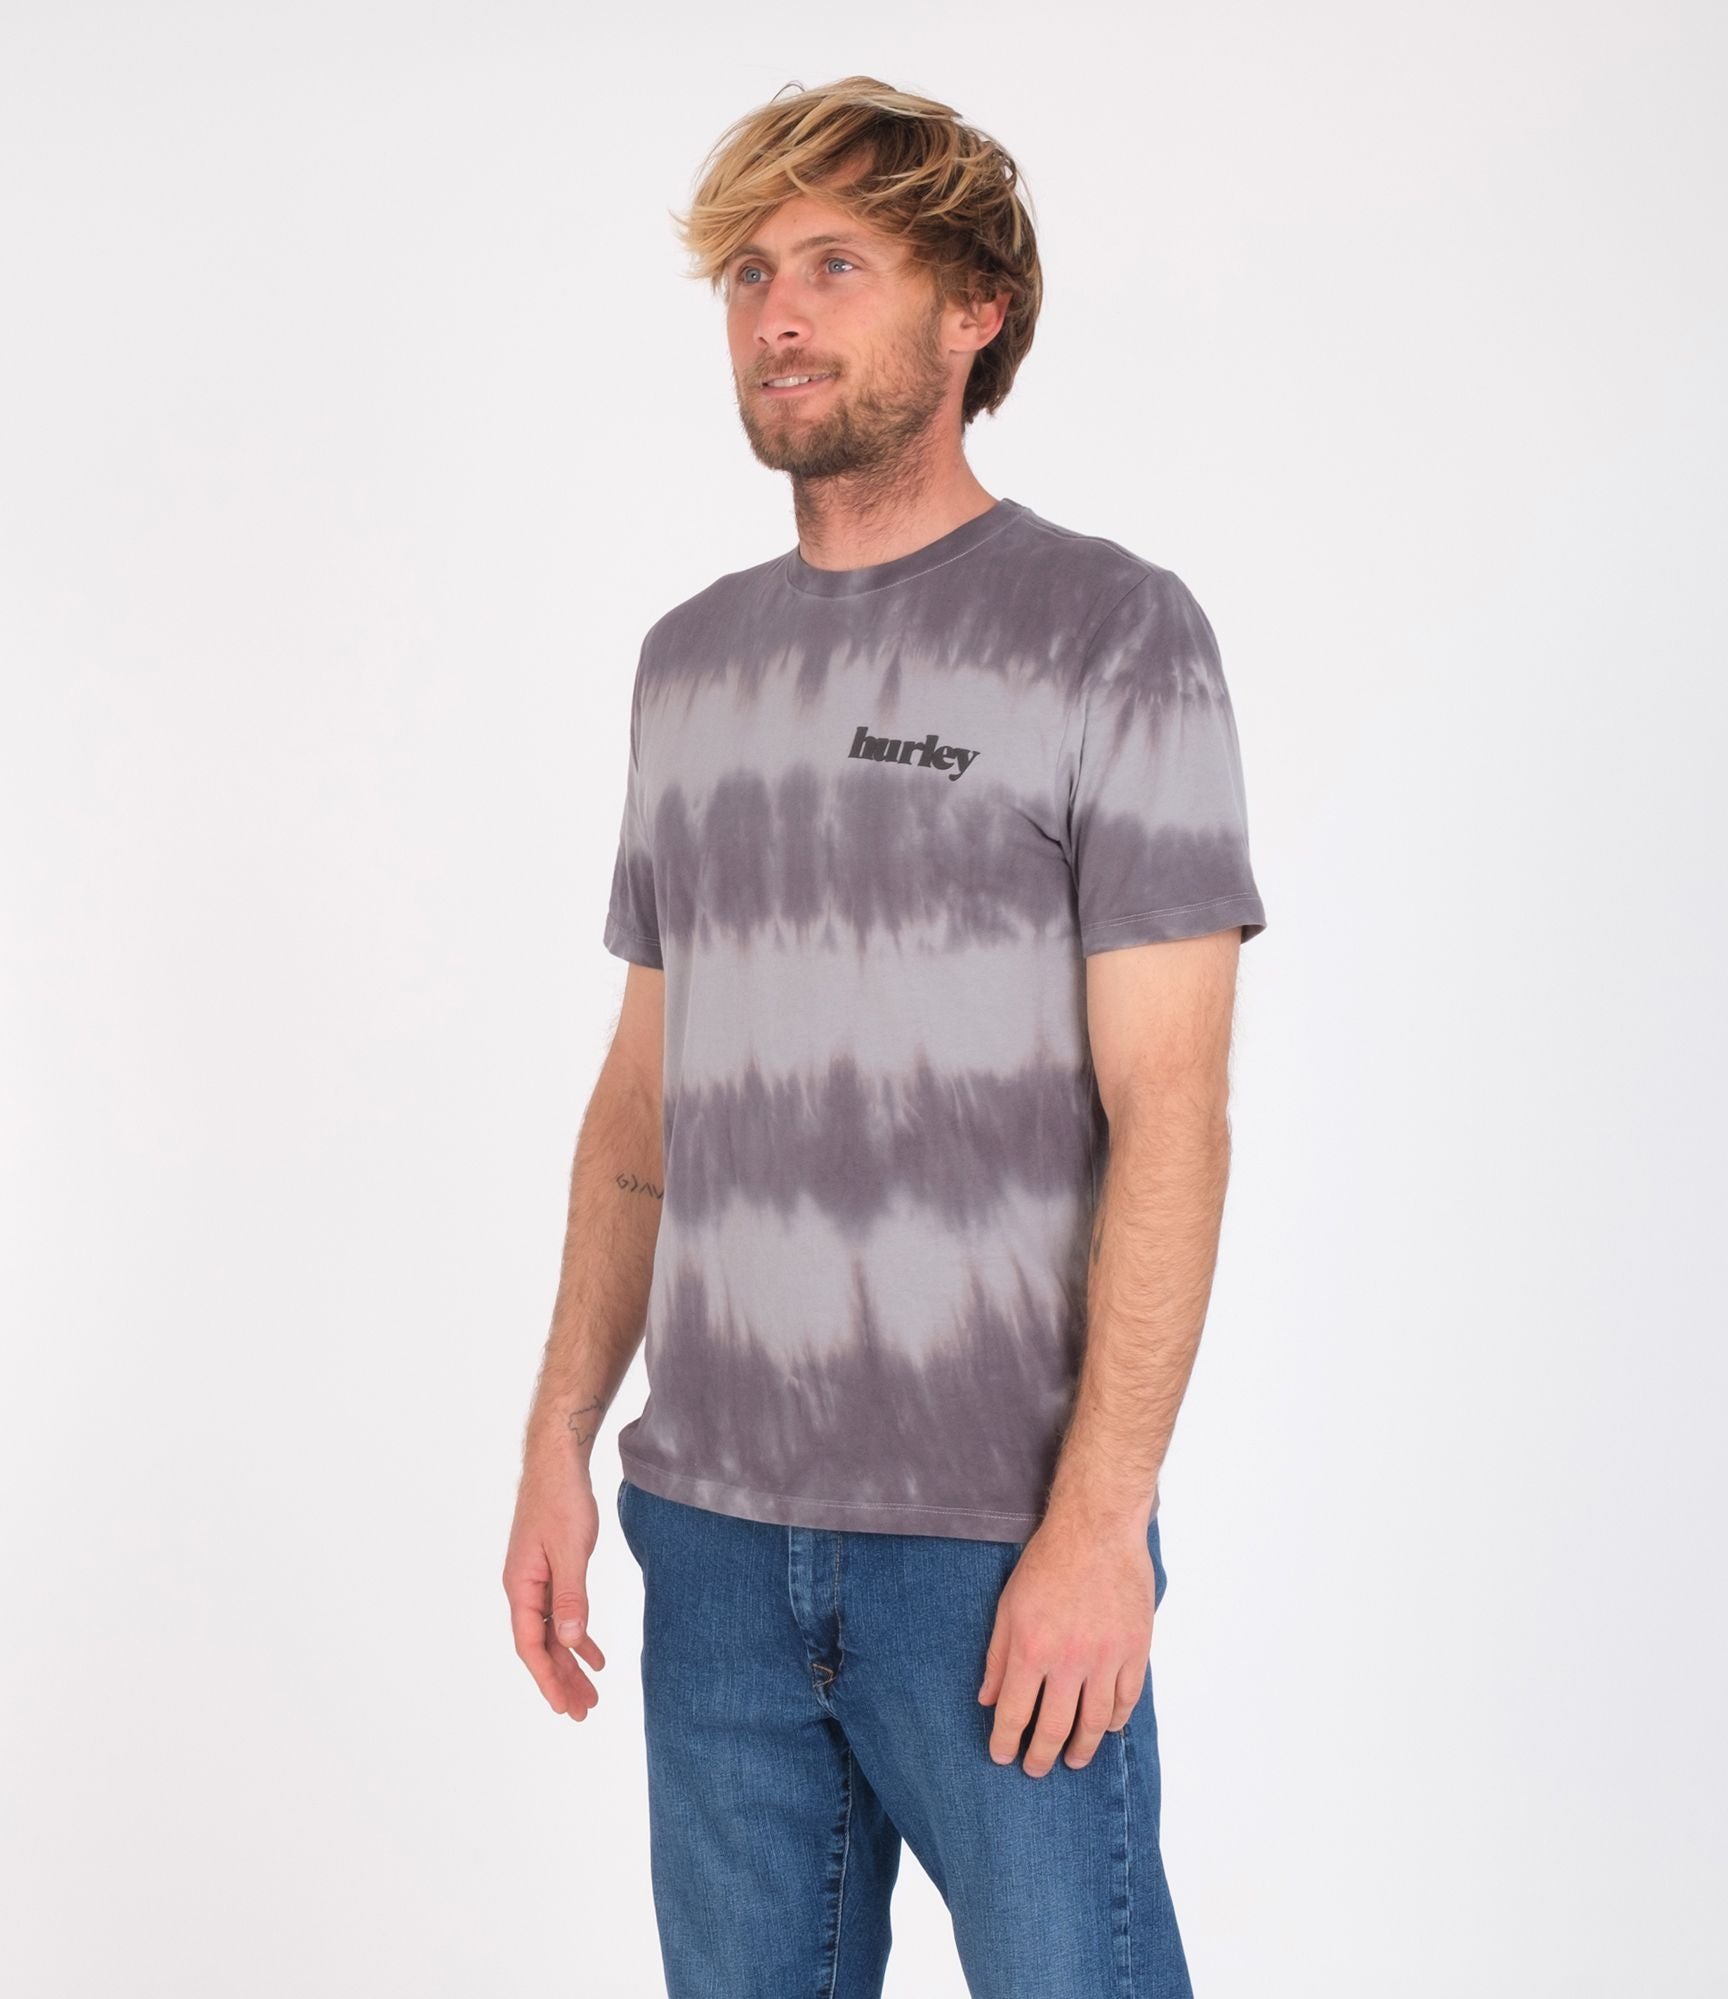 Camiseta Hurley Everyday washed Tie Dye Particly Grey | Camisetas de hombre | Camisetas manga corta de hombre | LO MÁS NUEVO | surfdevils.com